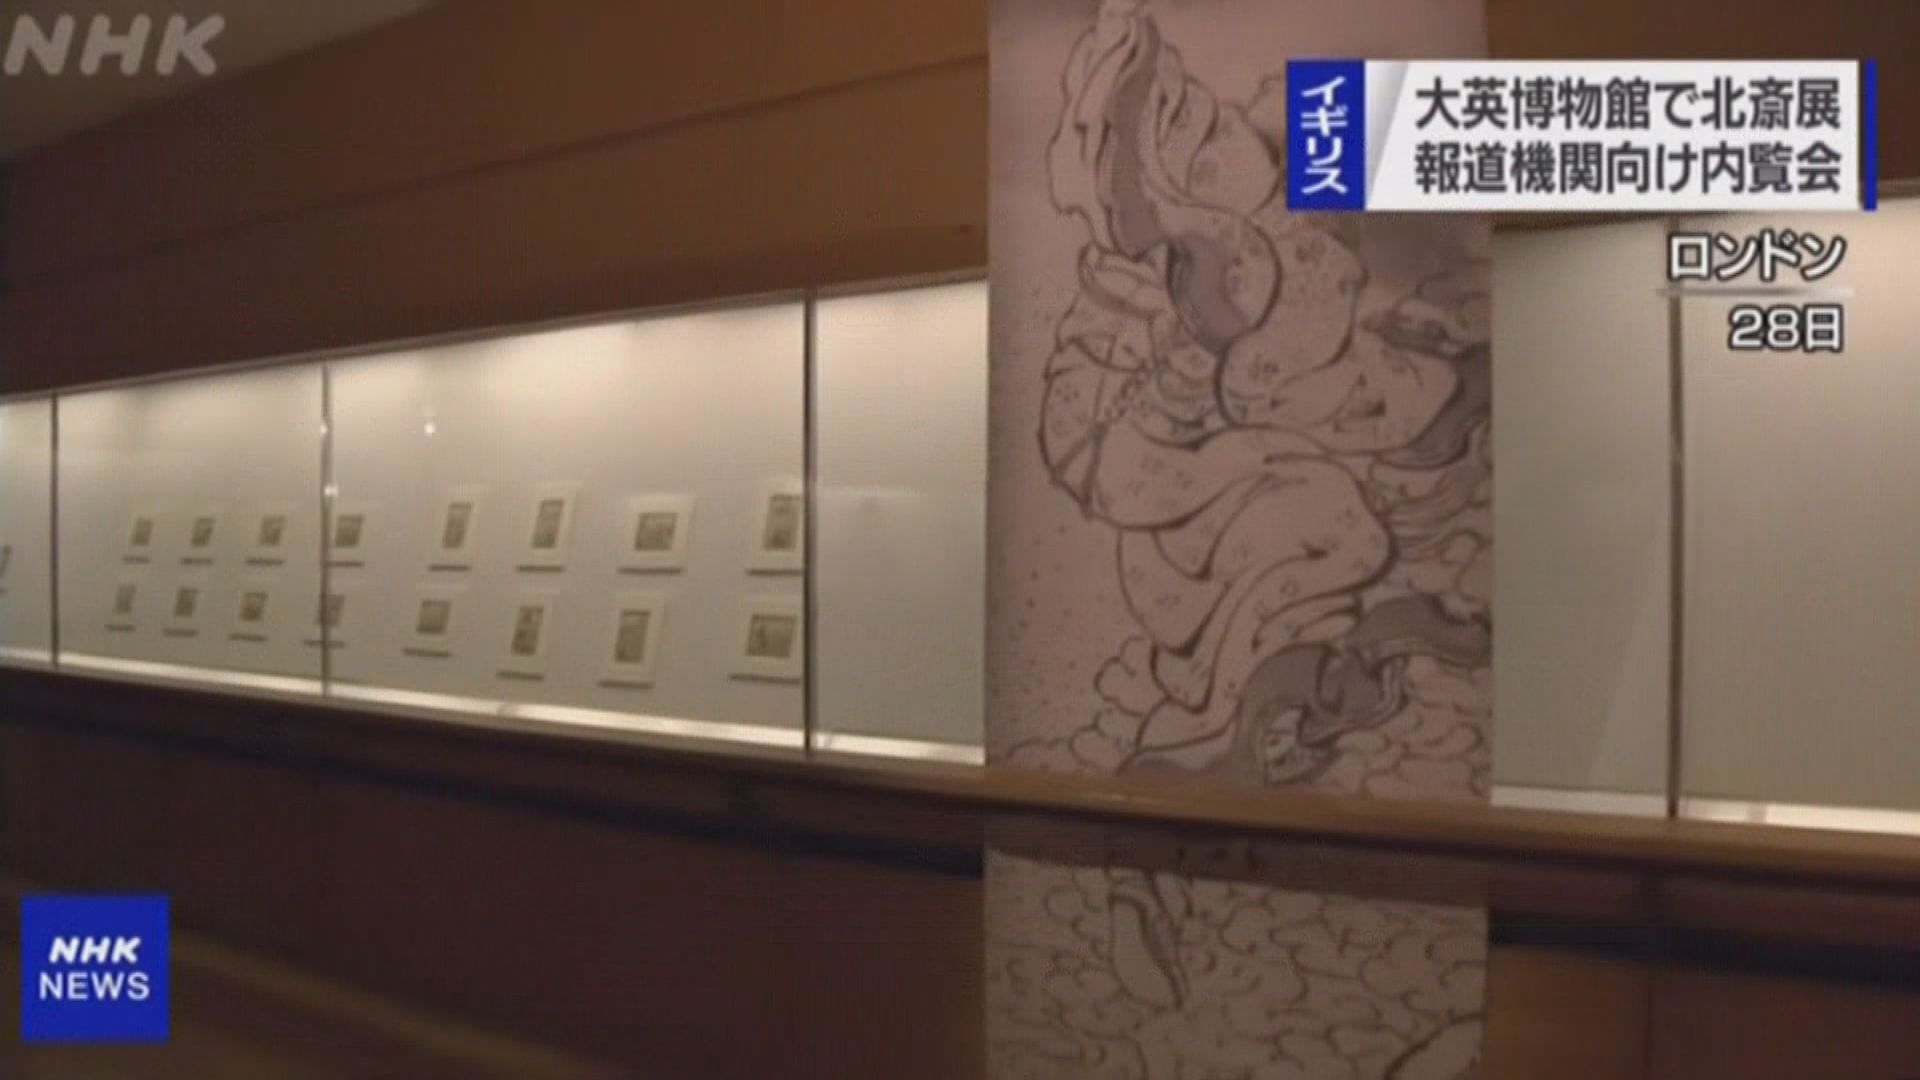 【環球薈報】葛飾北齋103件作品大英博物館首度展出